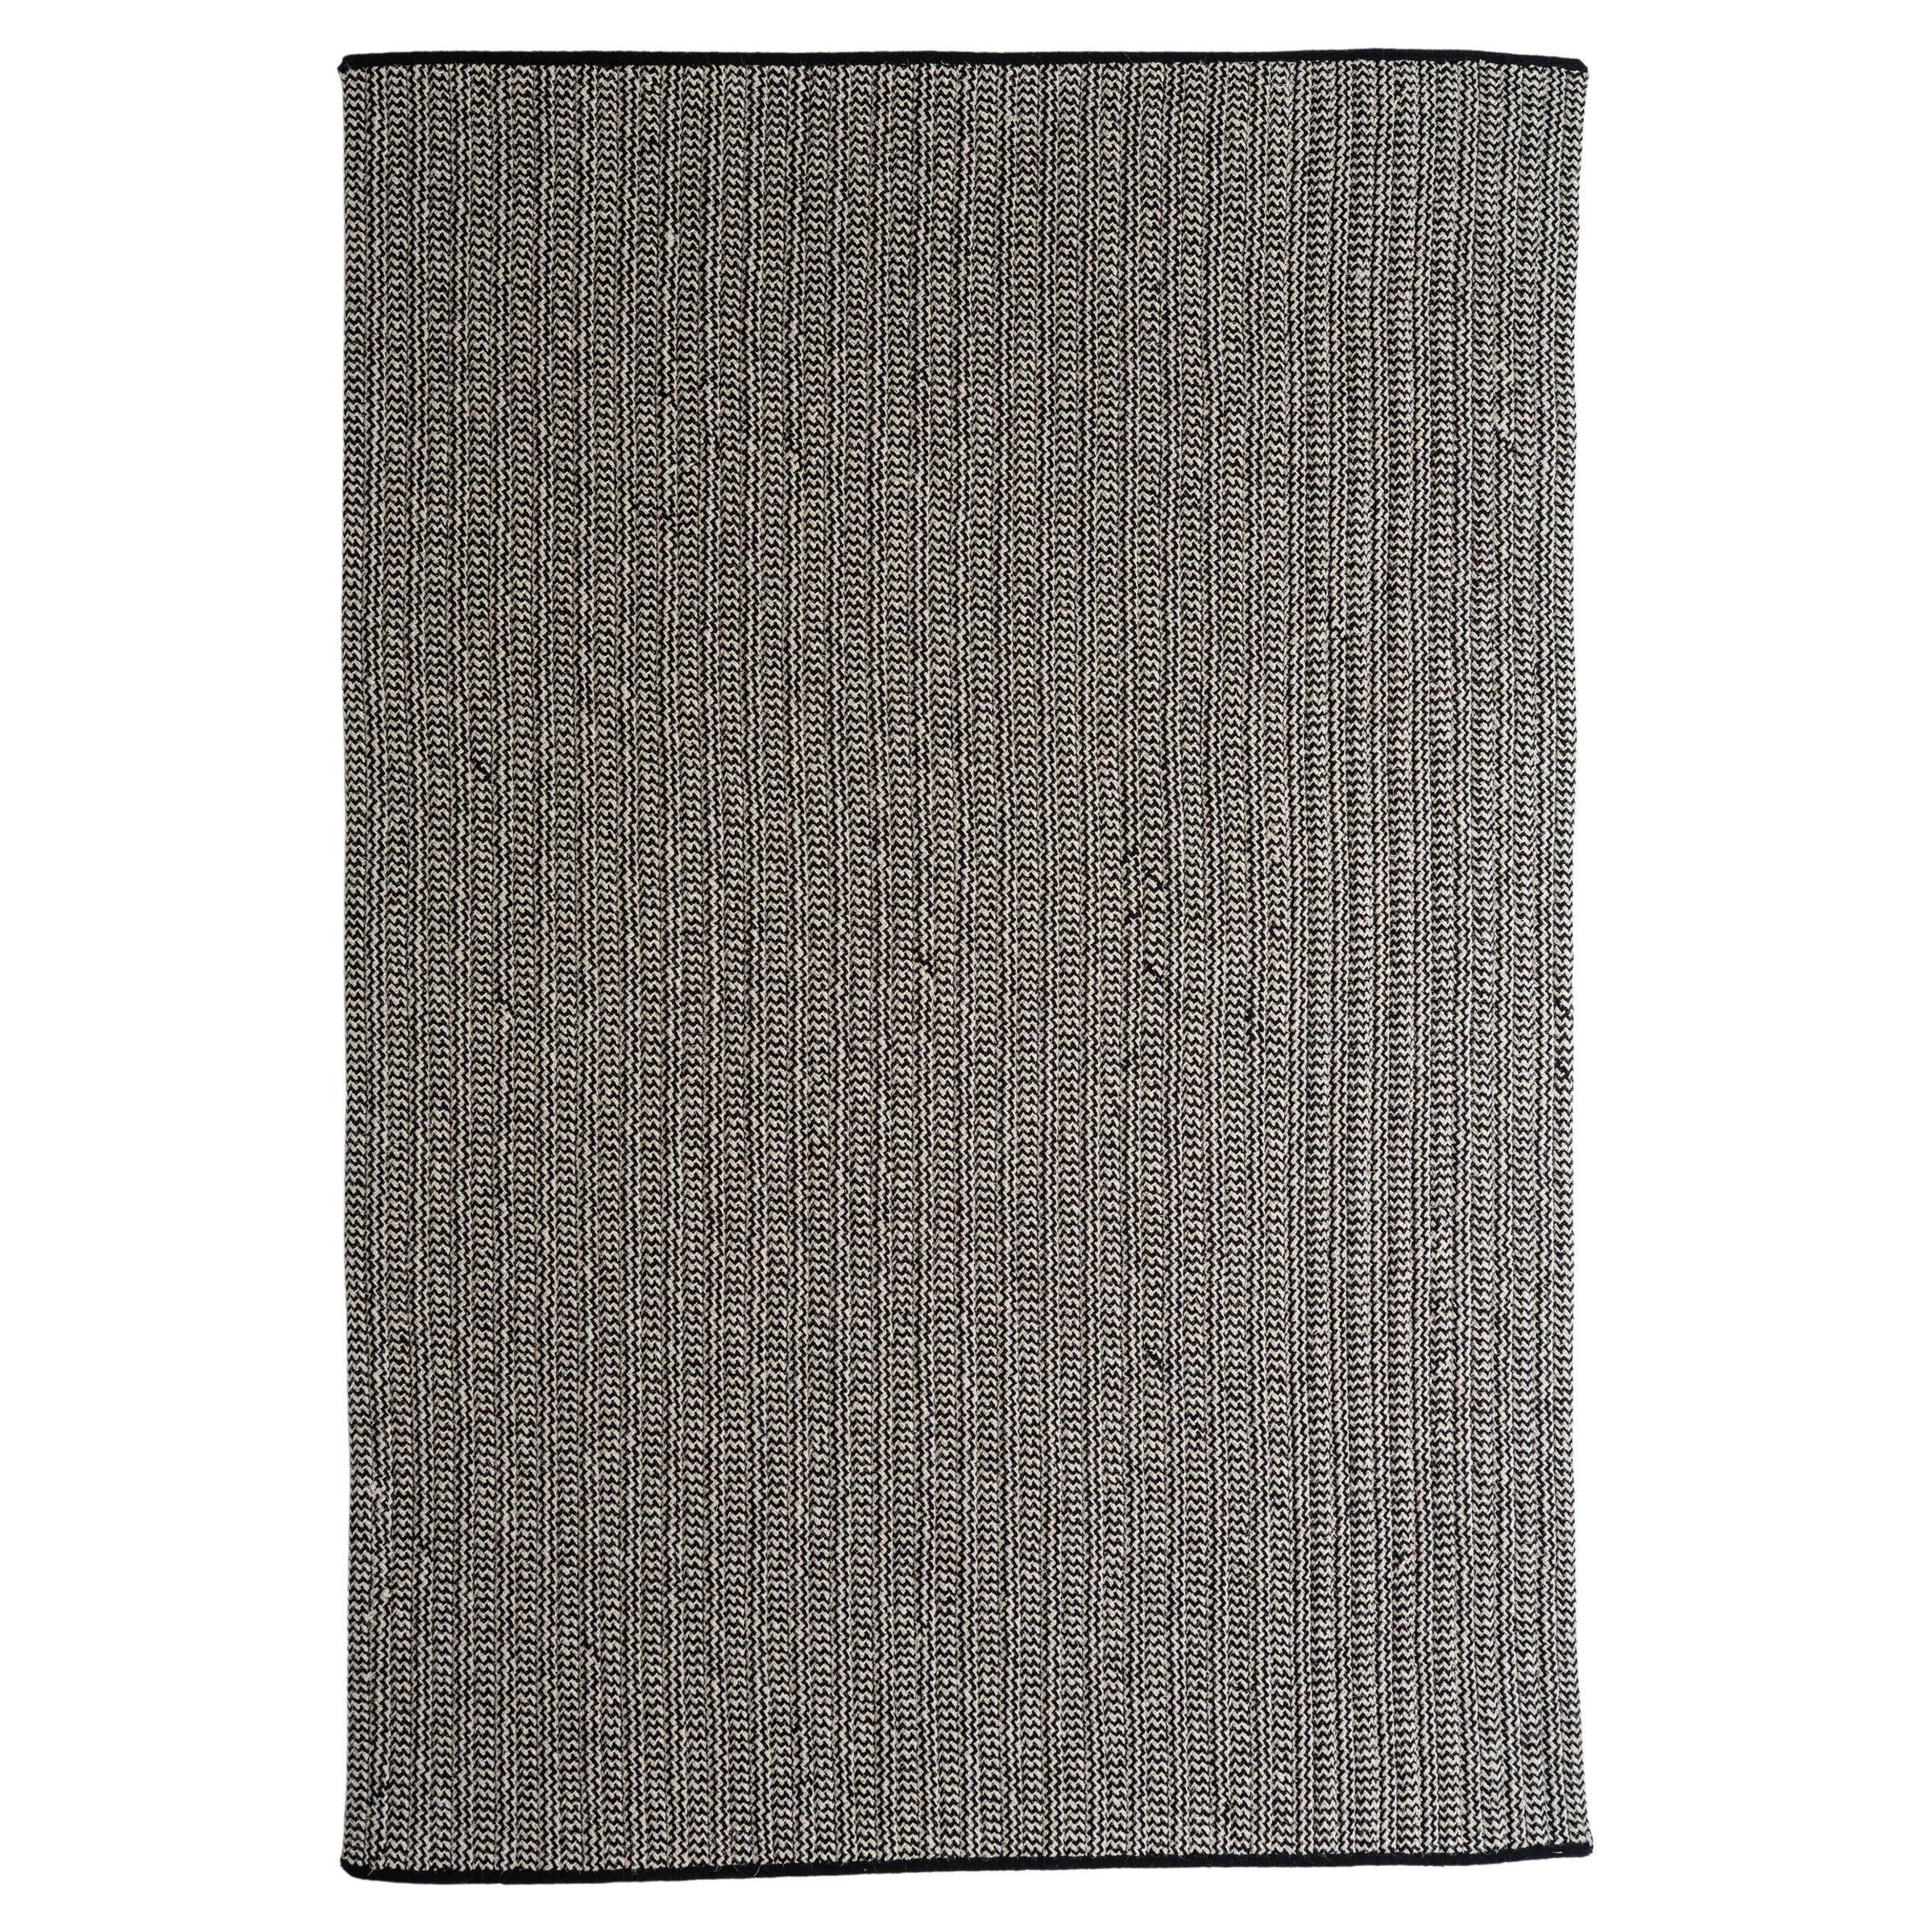 Thayer Design Studio, laine naturelle, mélange noir et gris, tapis 